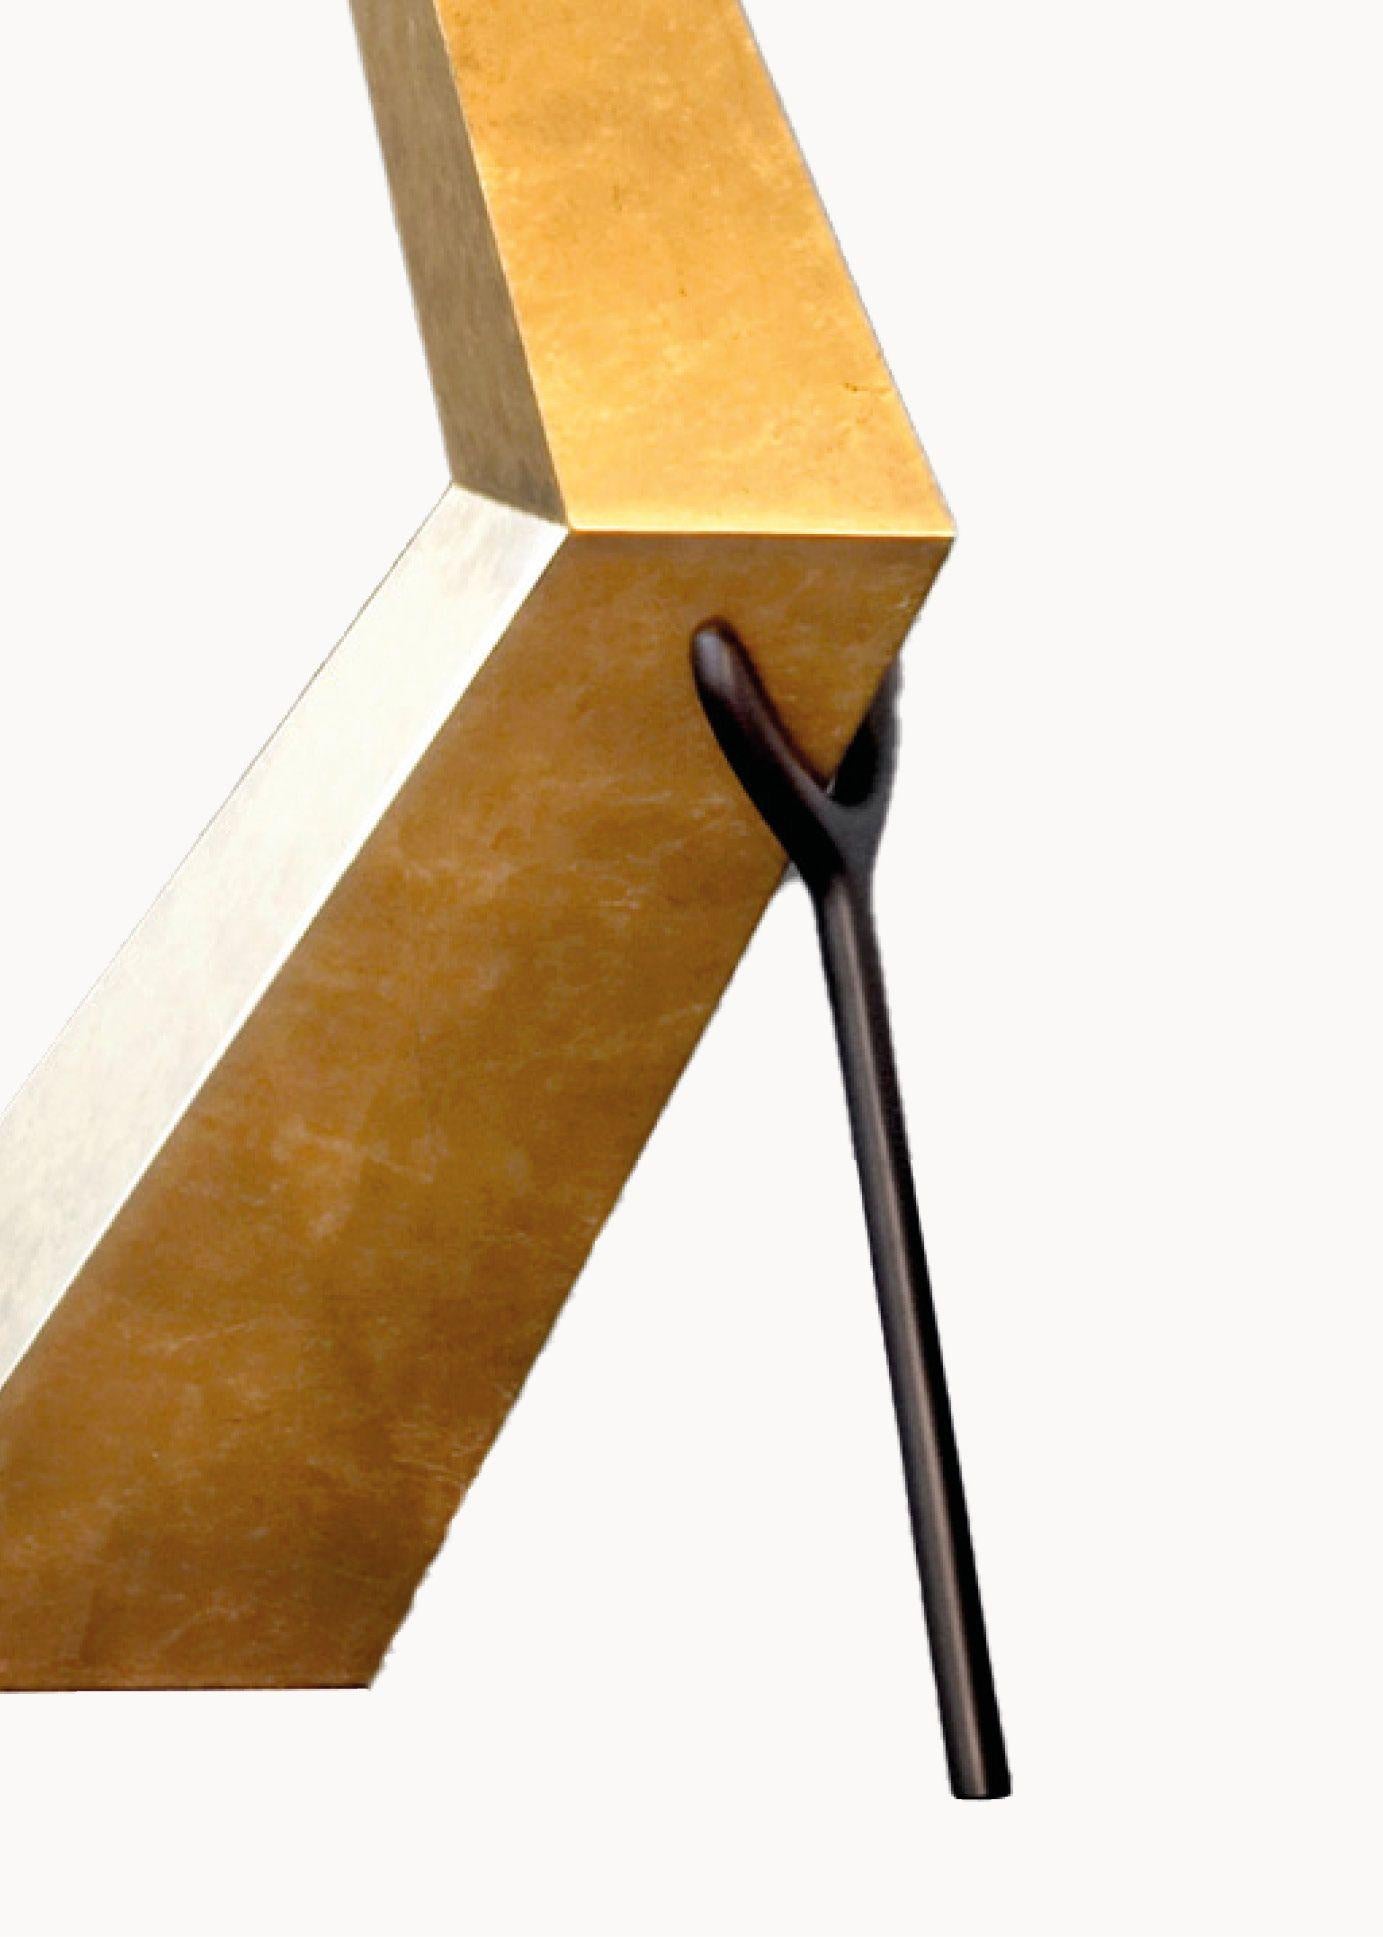 Bracelli Lampe entworfen von Dali hergestellt von BD seit 2009.

Paneelstruktur mit feinem Blattgold überzogen und nachgedunkelt.
Lampenschirm in schwarzer Farbe Baumwolle und Viskose.

Maße: 37 x 64 x H.180 cm

Limitierte Auflage von 105 Stück /